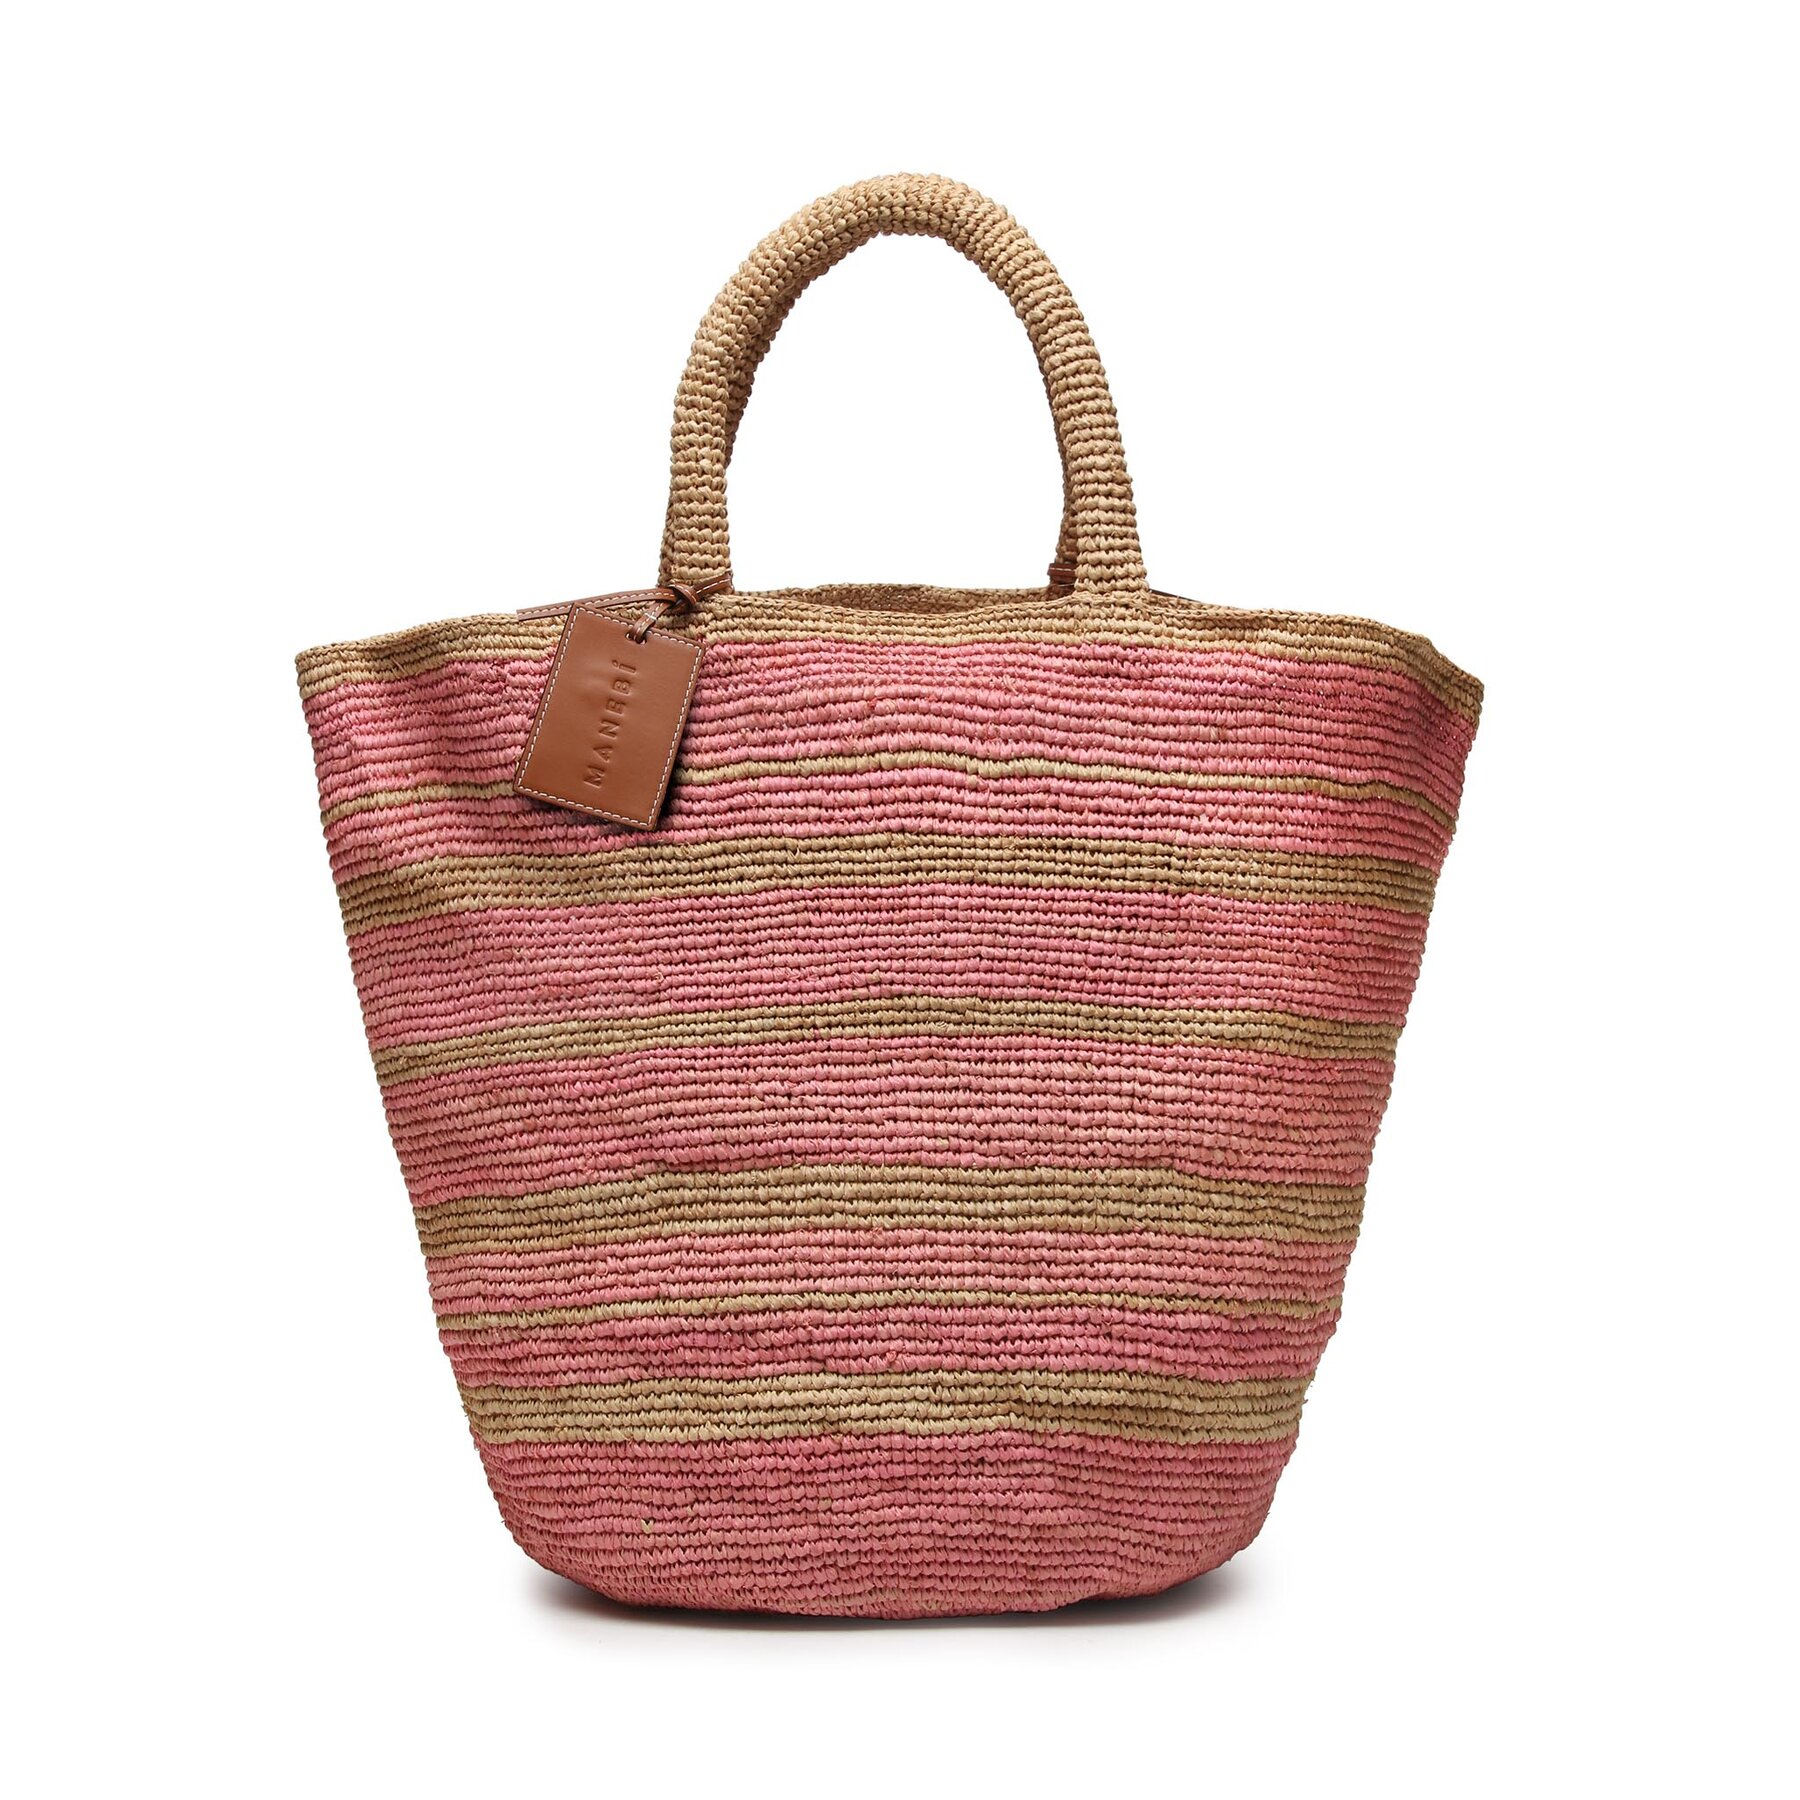 Geantă Manebi Natural Raffia Summer Bag v 5.8 AD Tan And Pink Stripes 5.8 imagine super redus 2022